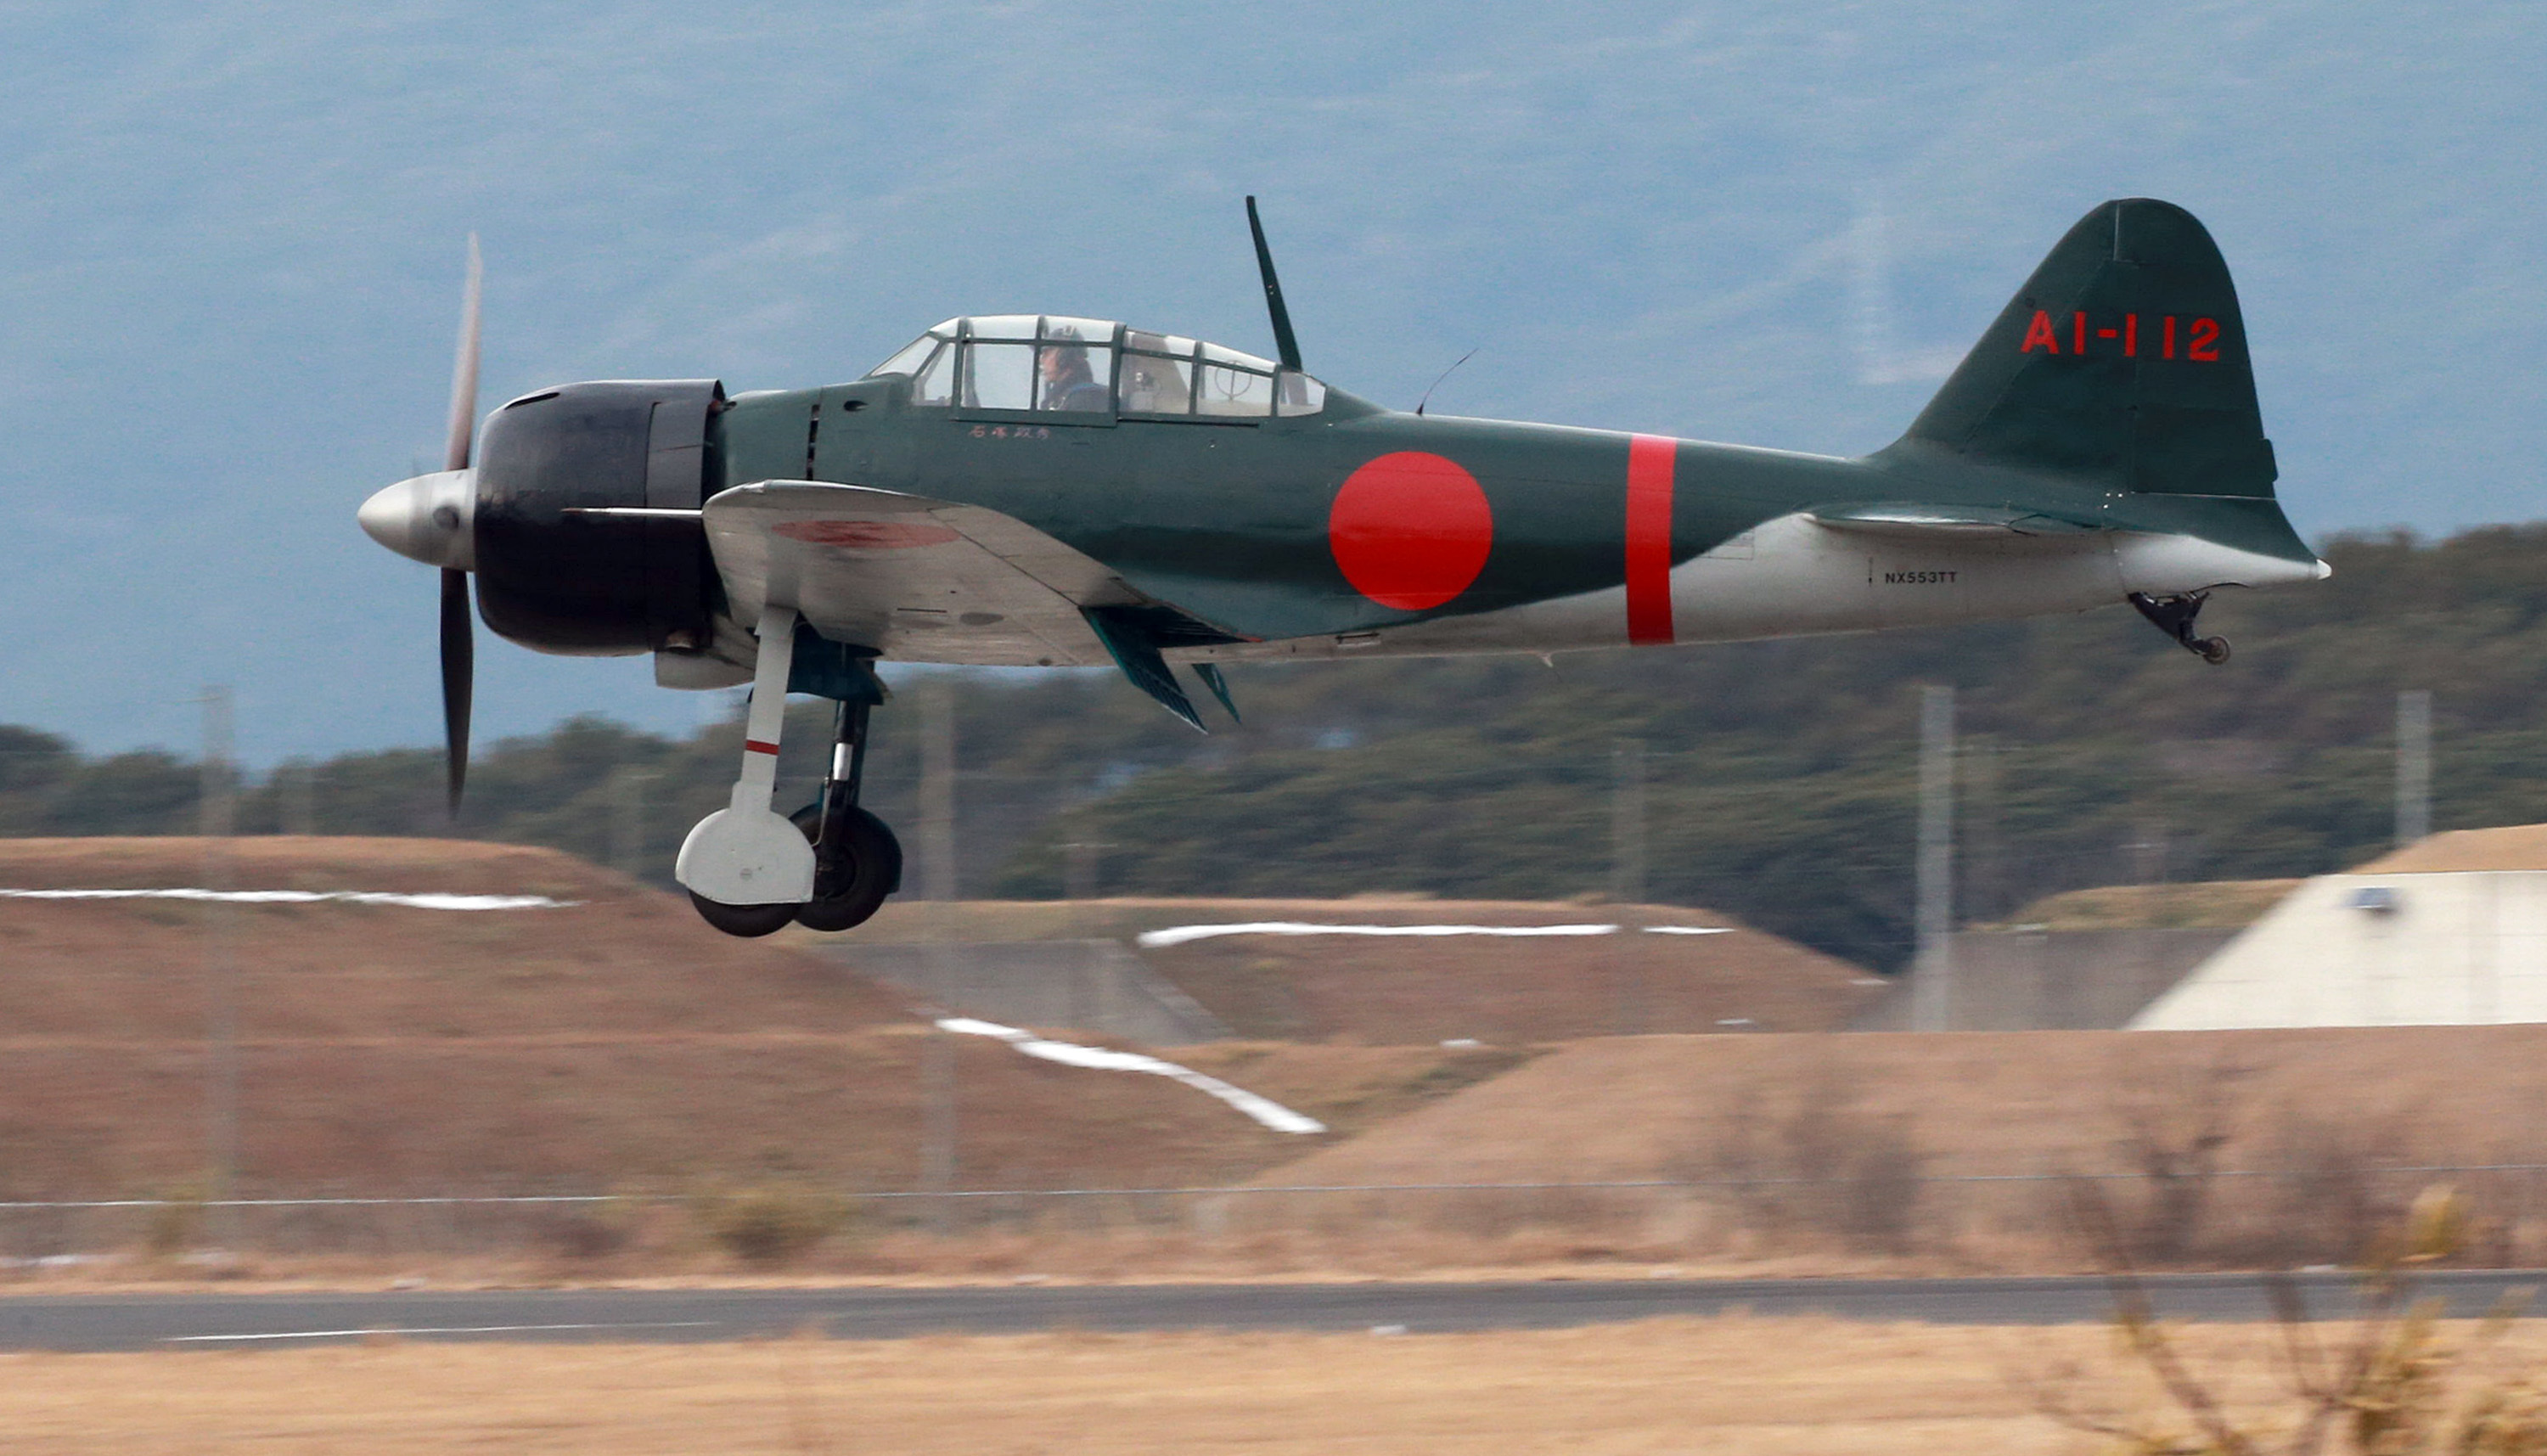 日本の名機 零戦 が レッドブル エアレース千葉17 に登場 Spice エンタメ特化型情報メディア スパイス